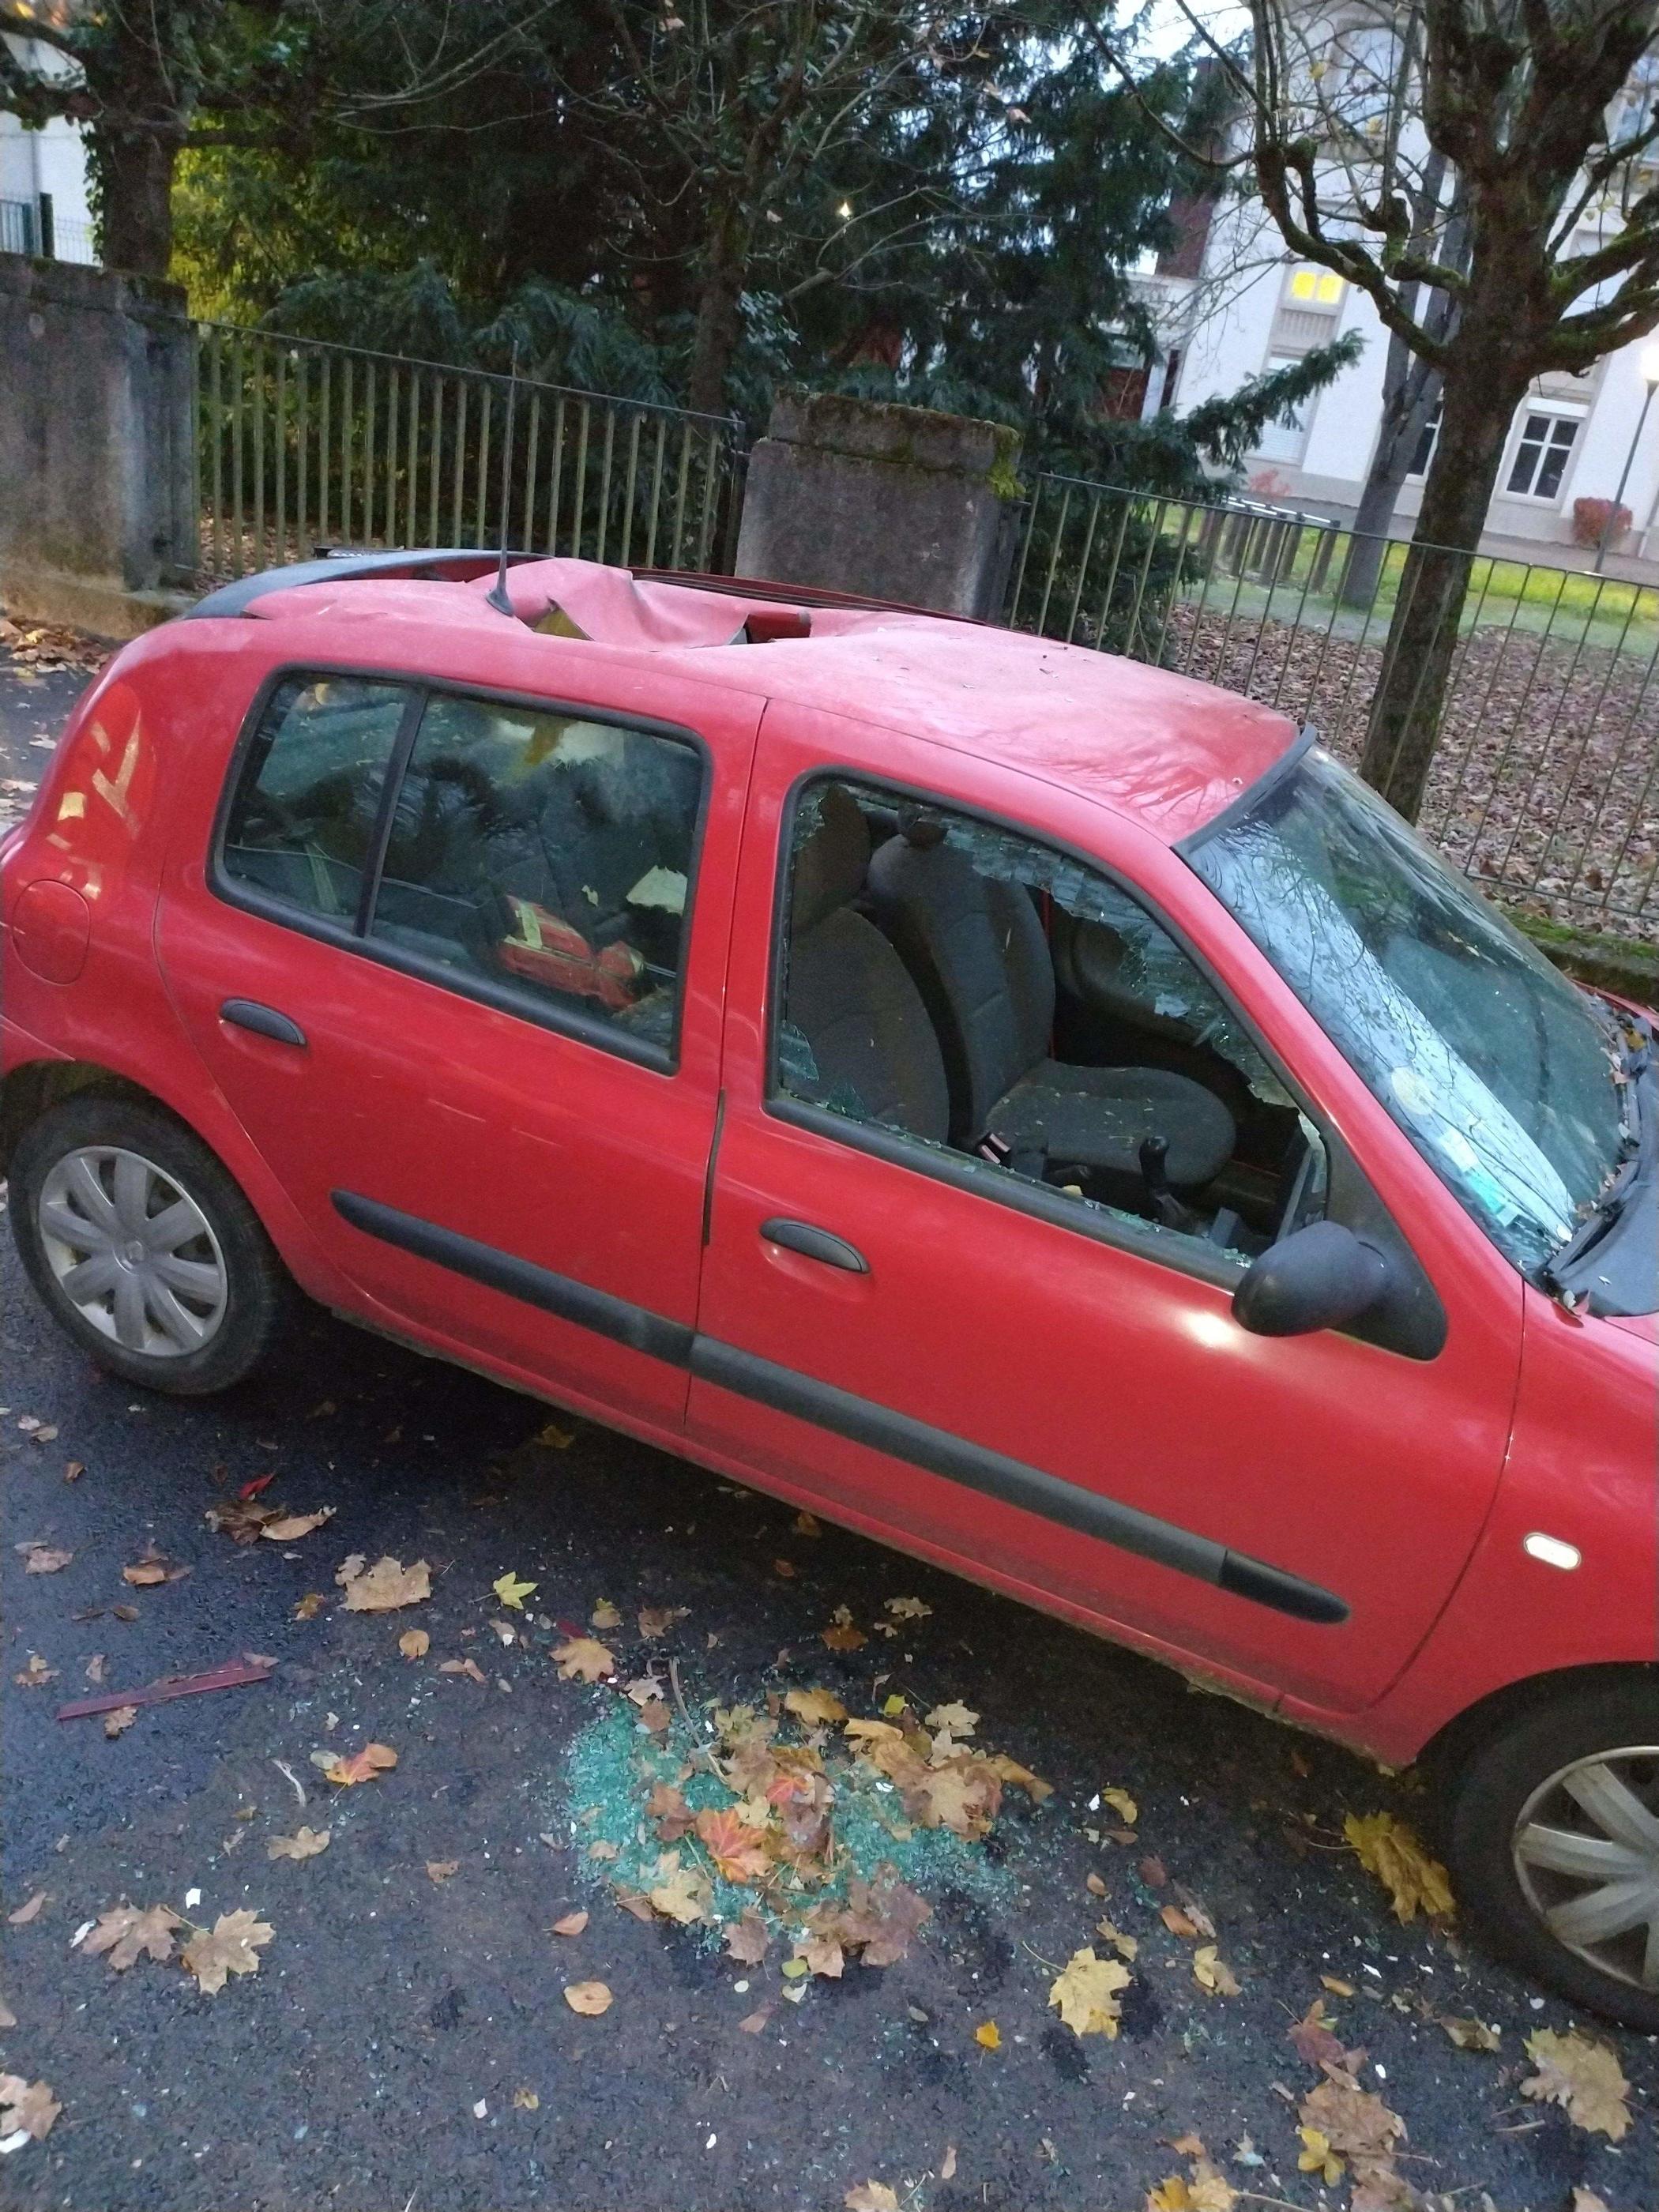 Le 20 novembre dernier, un voiture a été retrouvée étrangement éventrée à Strasbourg. AFP